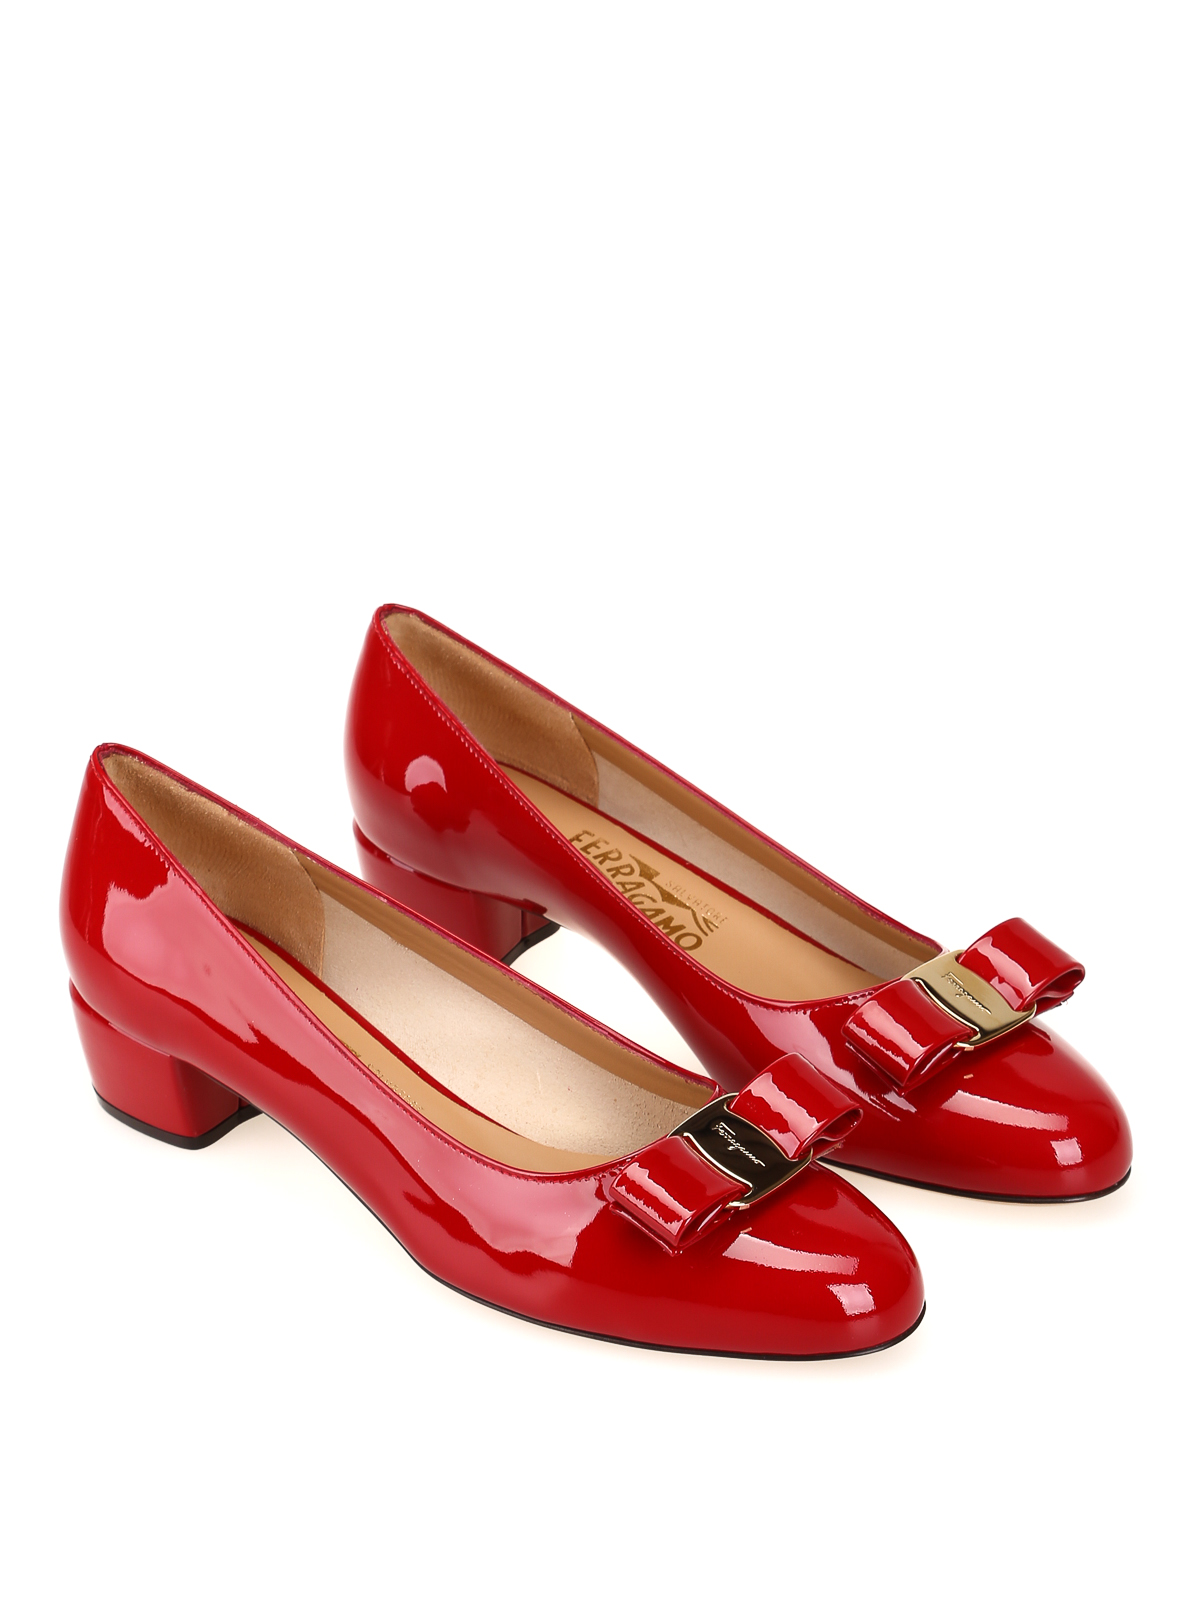 shoes Salvatore Ferragamo - Vara 1 red leather -